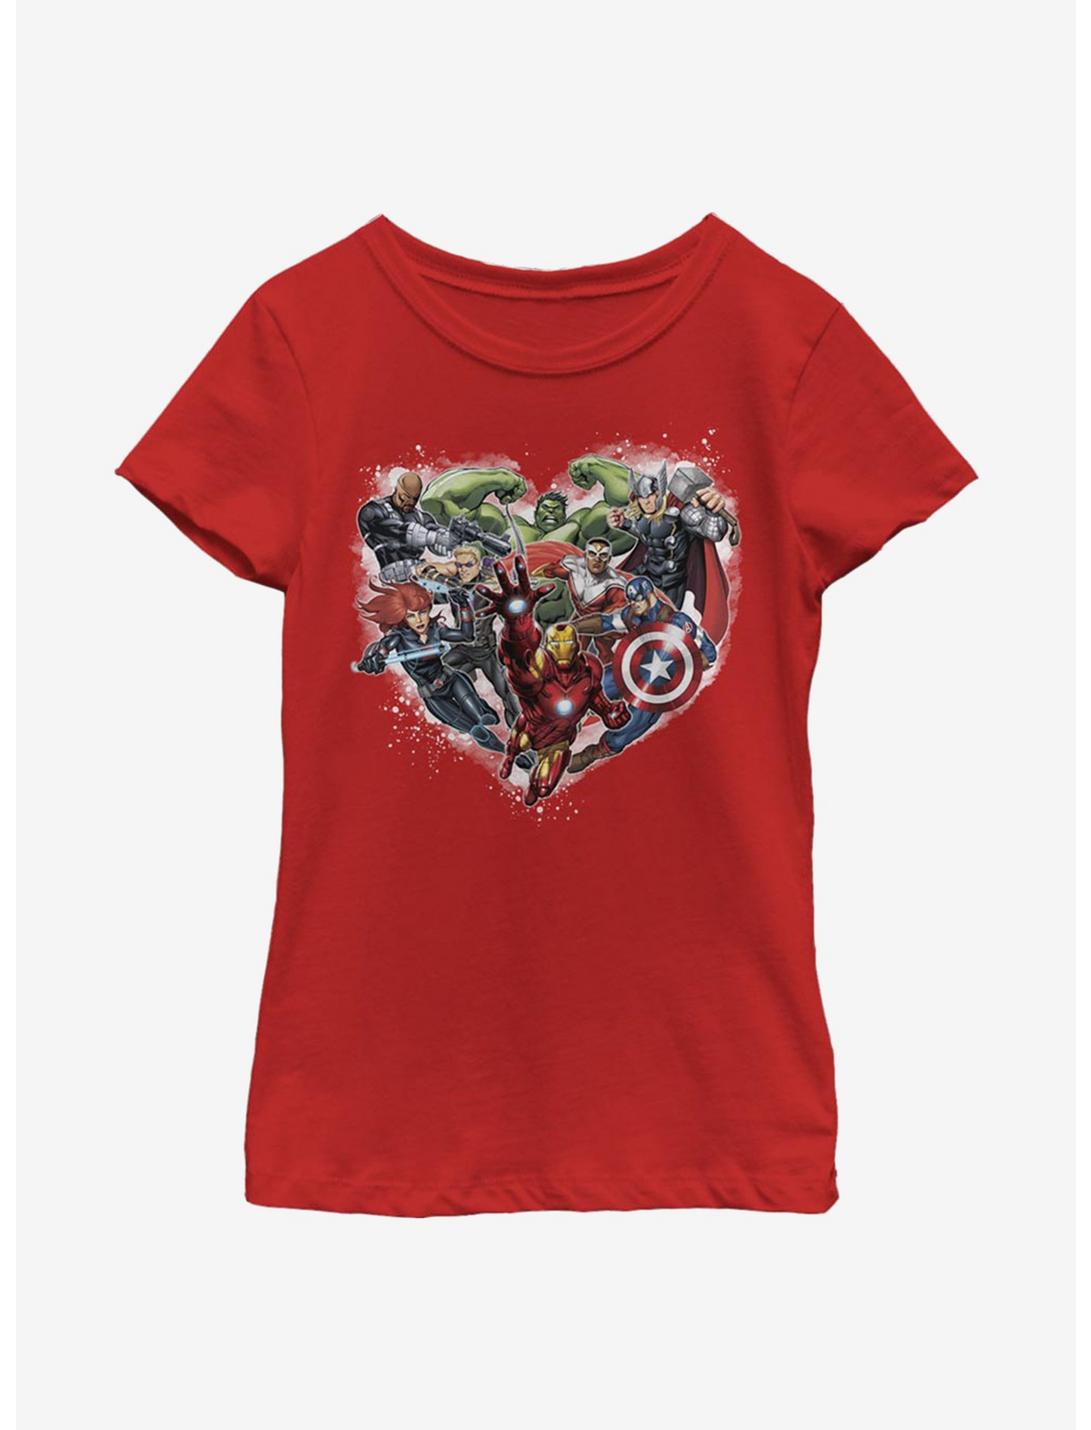 Marvel Avengers Avenger Heart Youth Girls T-Shirt, RED, hi-res